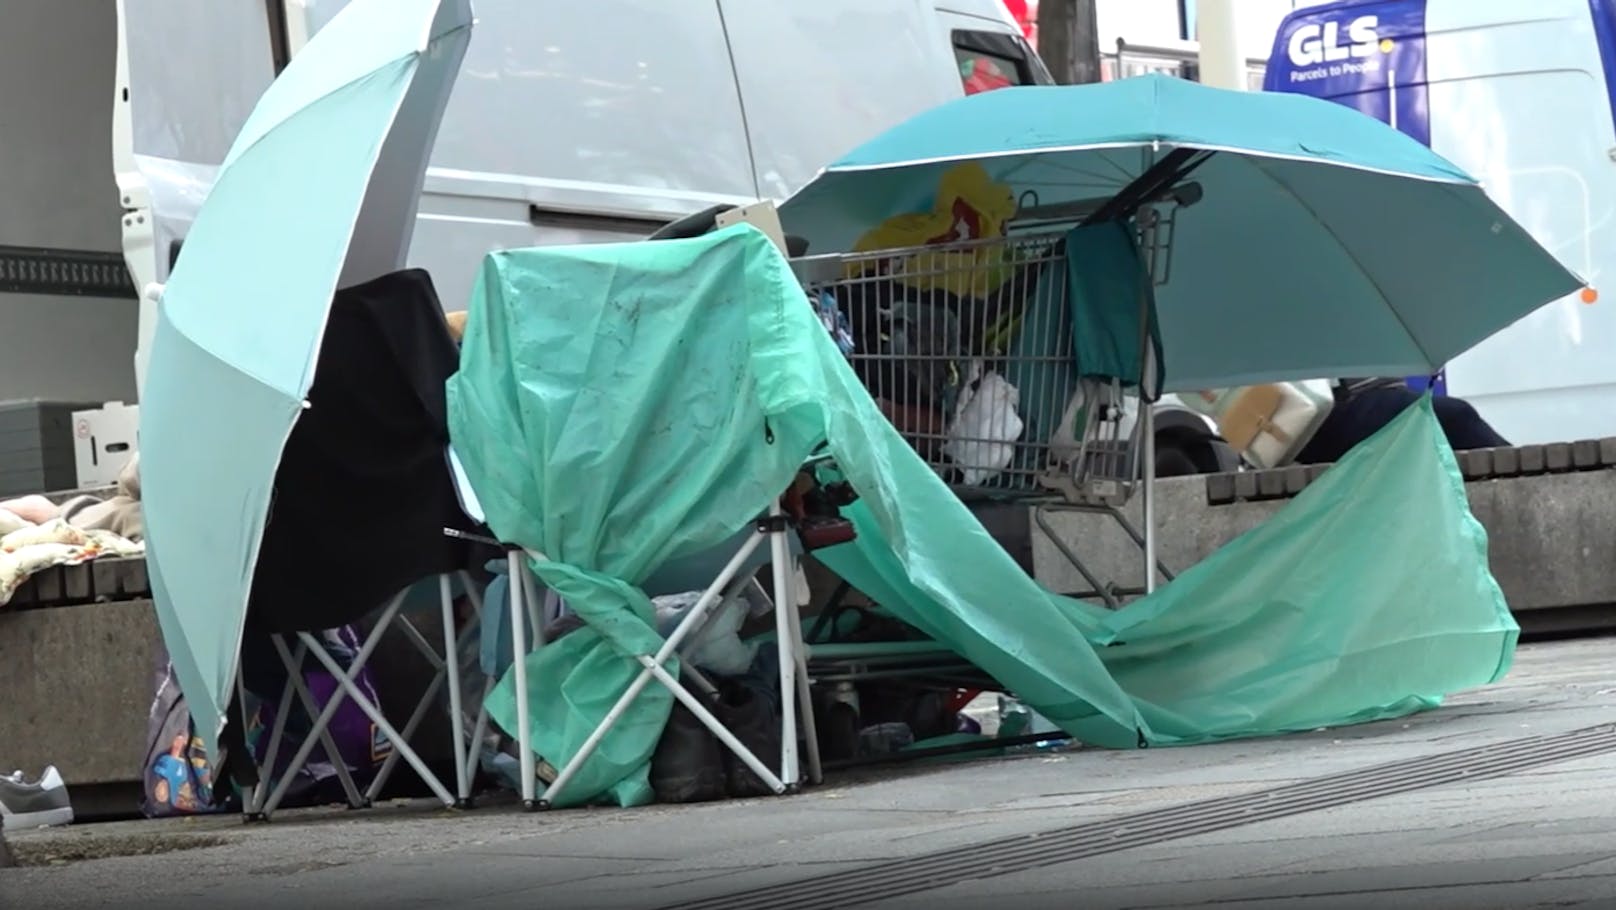 Obdachlosen-Camps: "Sie kommen auch aus Ungarn her"